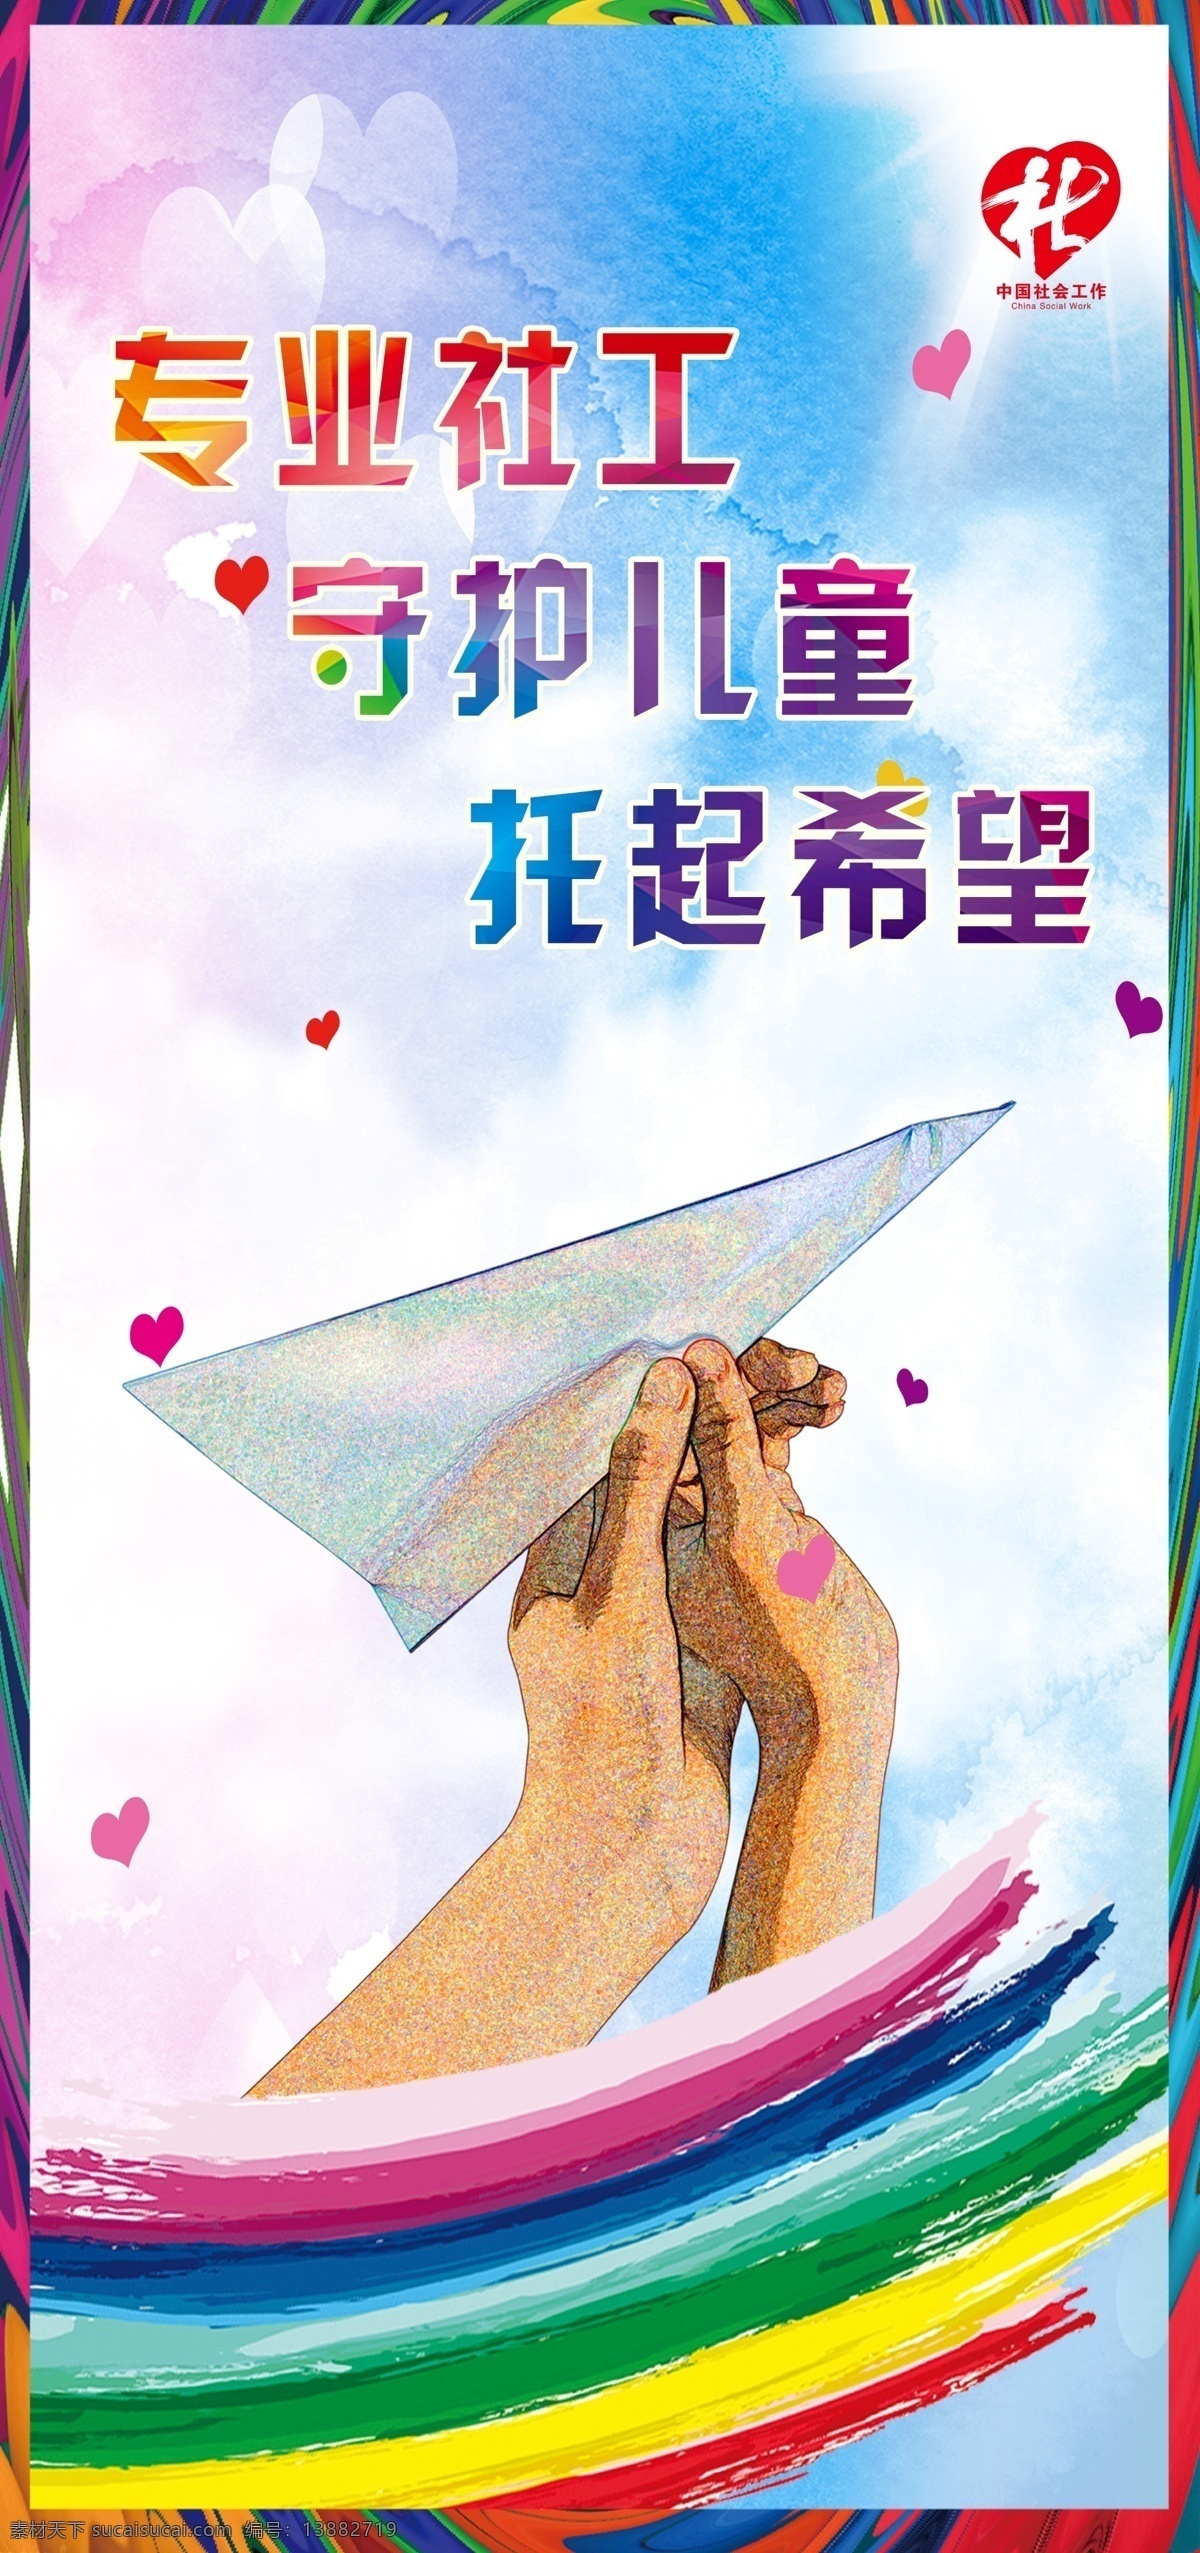 社工宣传 专业社工 守护儿童 托起希望 中国社会 工作标志 爱心 彩色底纹 飞纸飞机 两个人的手 彩虹 油画 天空 展架 海报 社工